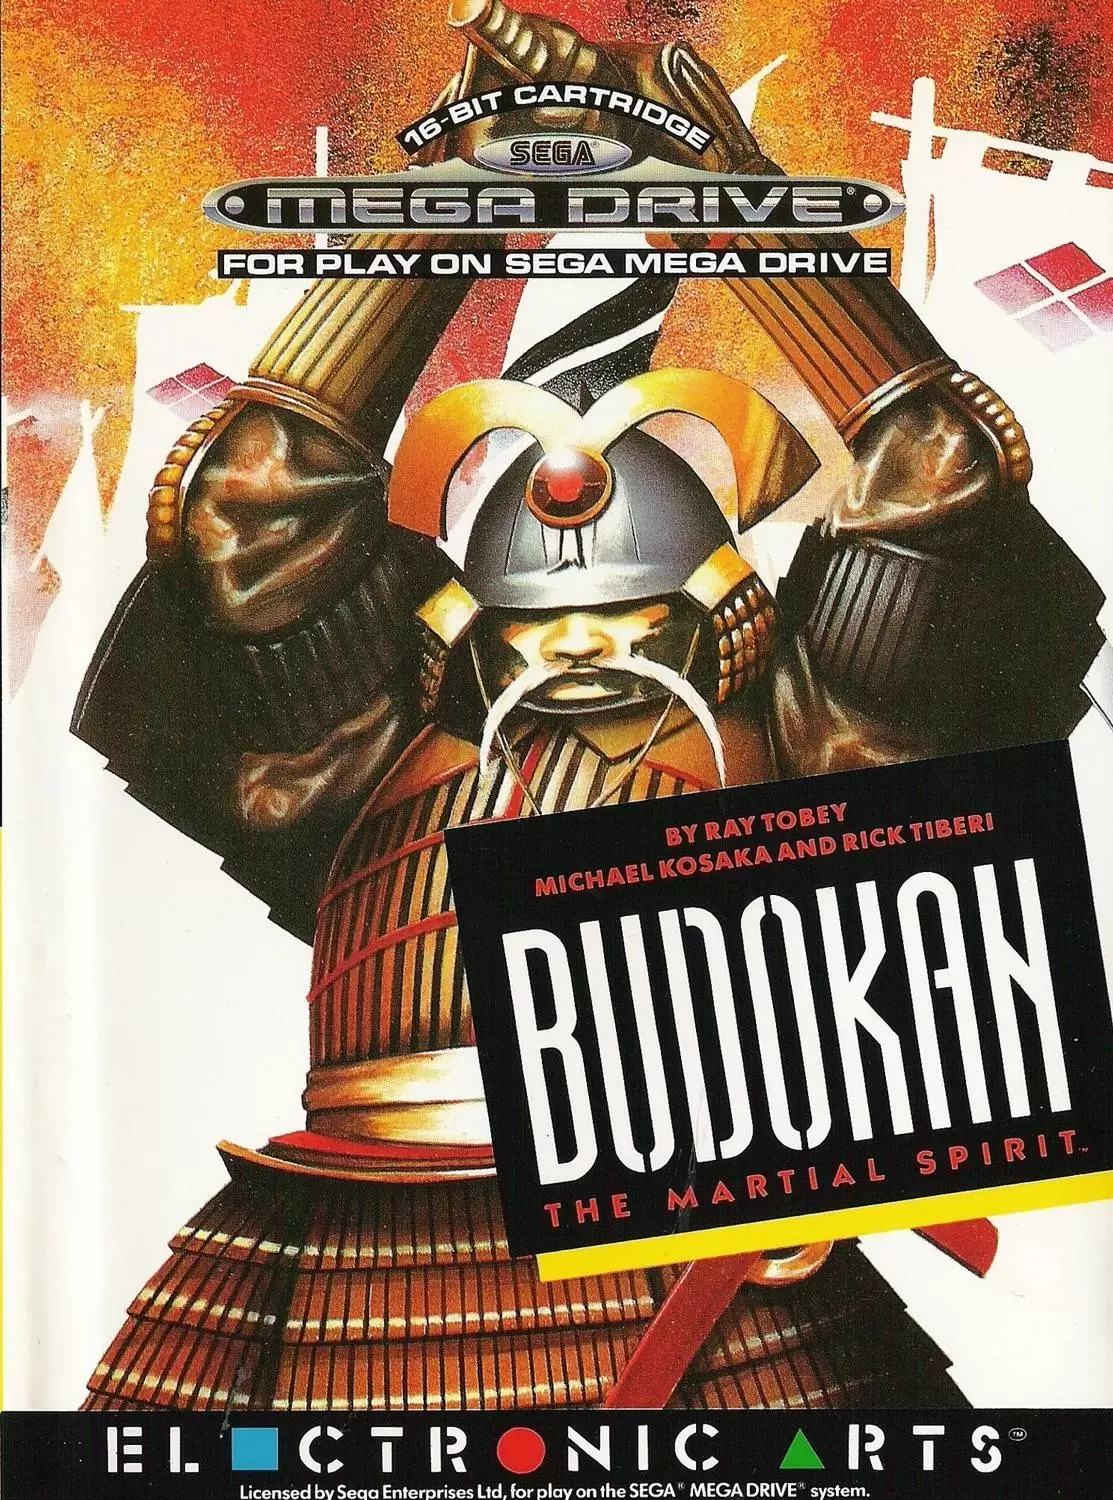 Sega Genesis Games - Budokan: The Martial Spirit